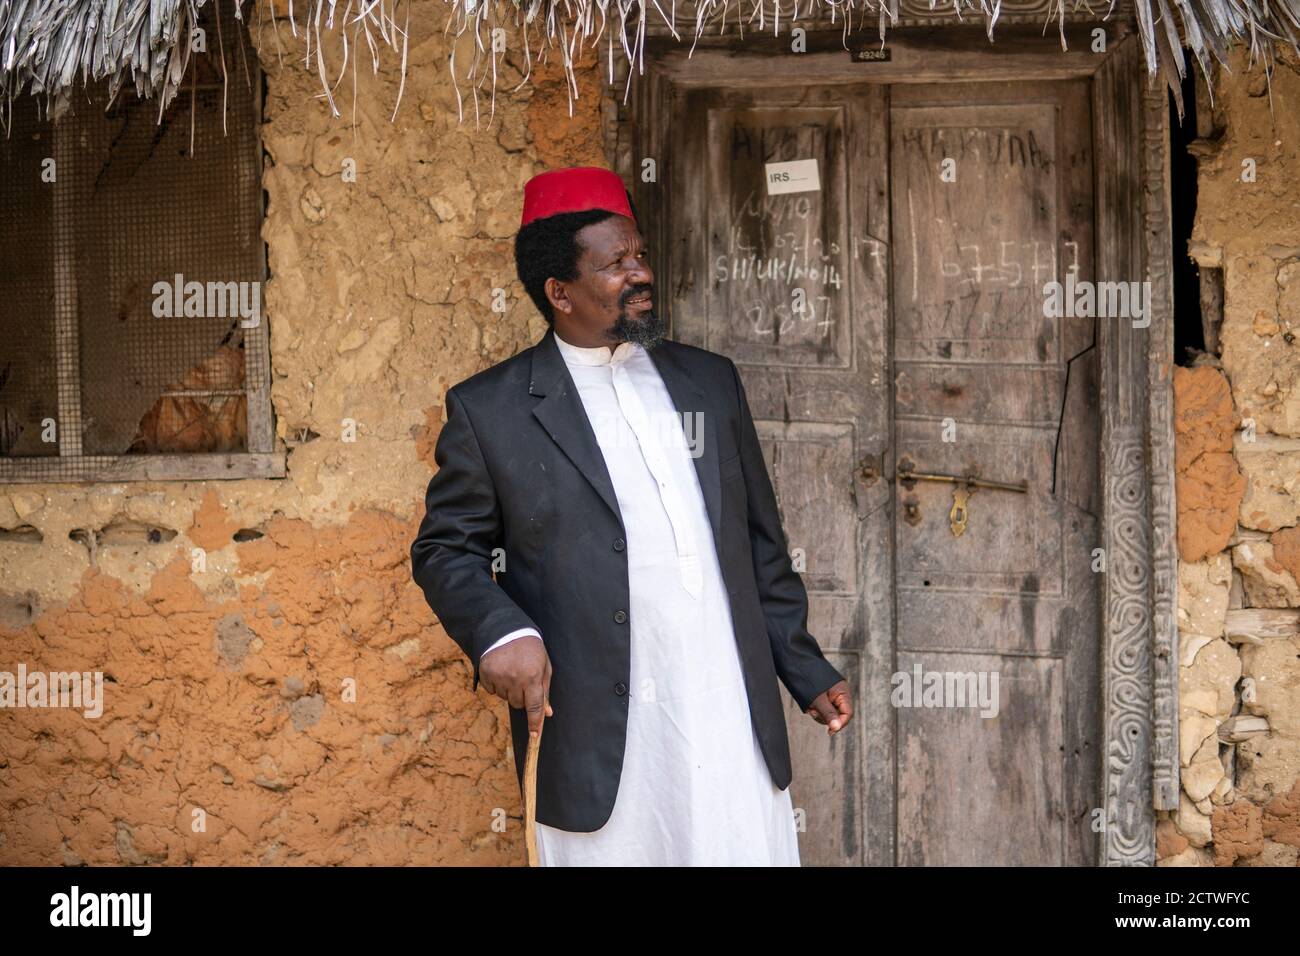 Un uomo anziano africano nel cappello rosso musulmano Taqiyyah Fez E Blazer  su vestito bianco muovendo un bastone per zoppo Persone vicino al Rifugio  base con tetto in paglia Foto stock -